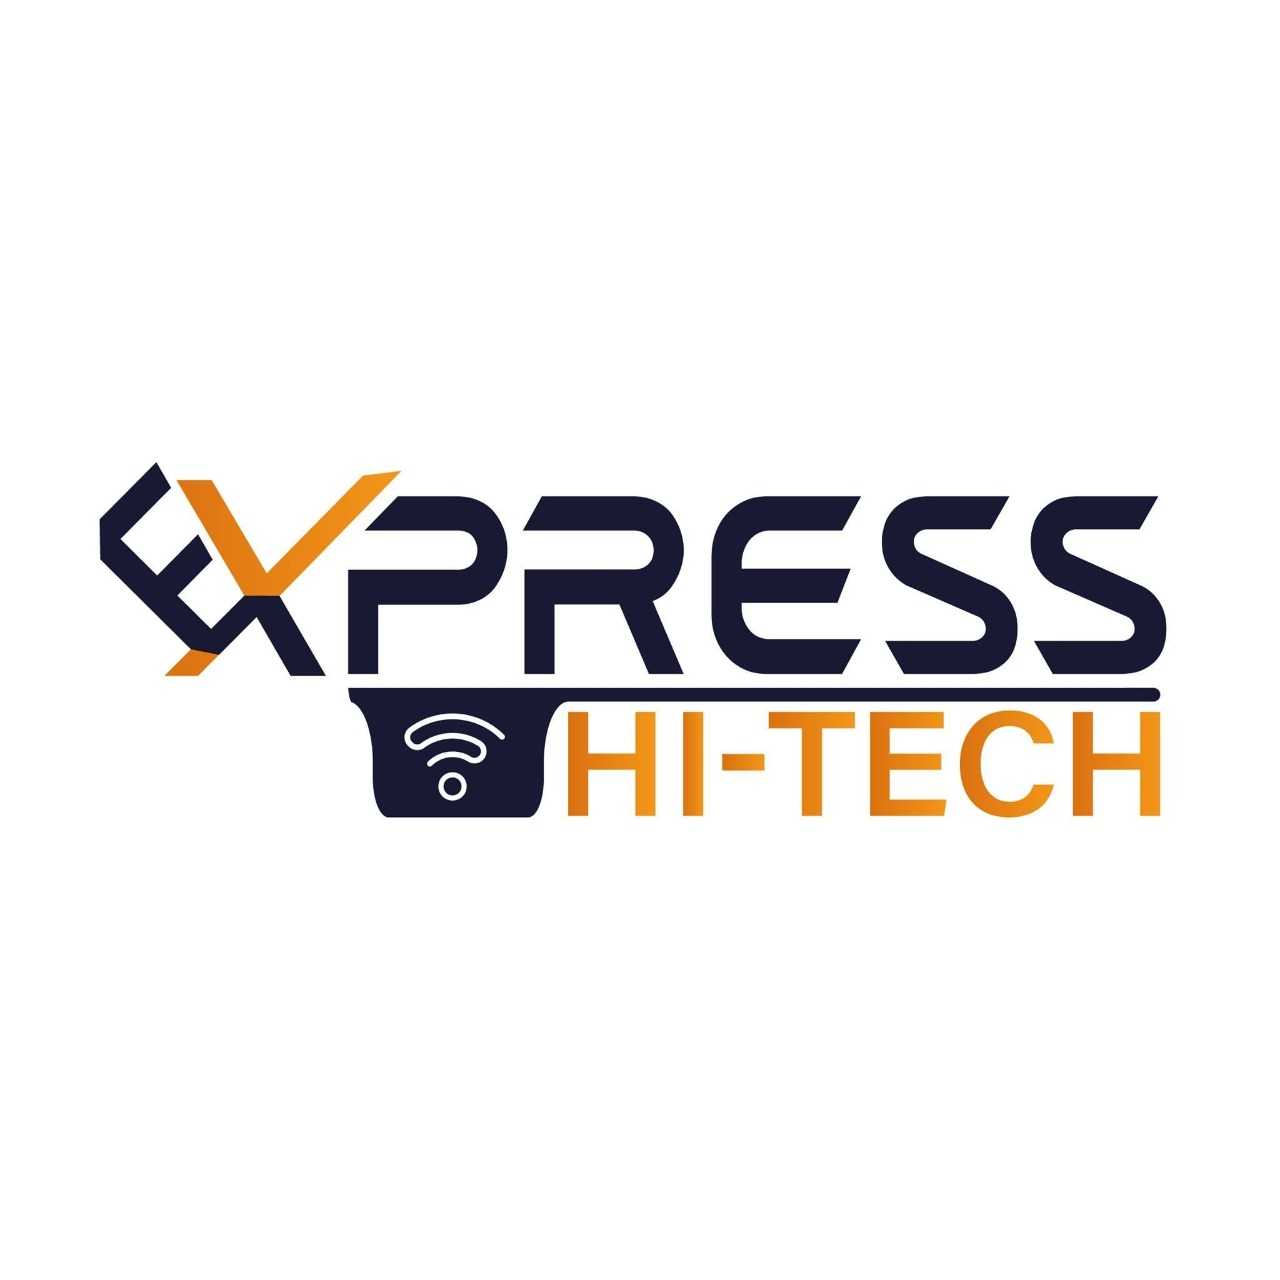 Express Hi-Tech